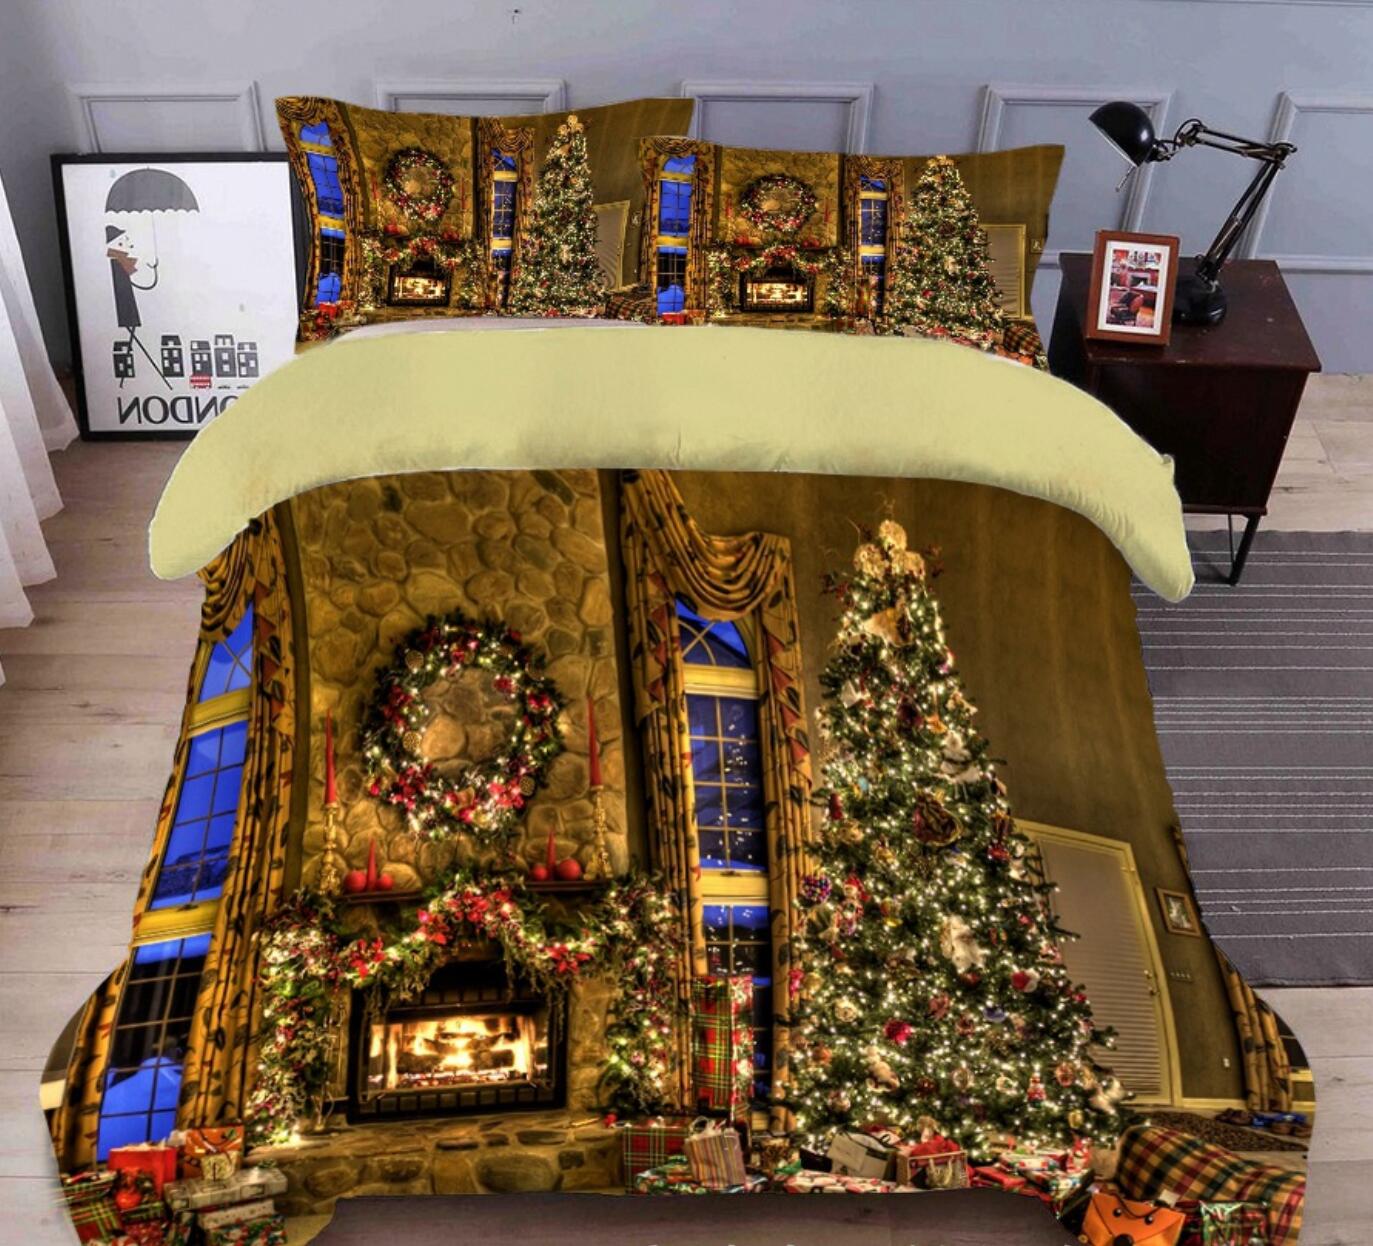 3D String Light Tree 31234 Christmas Quilt Duvet Cover Xmas Bed Pillowcases